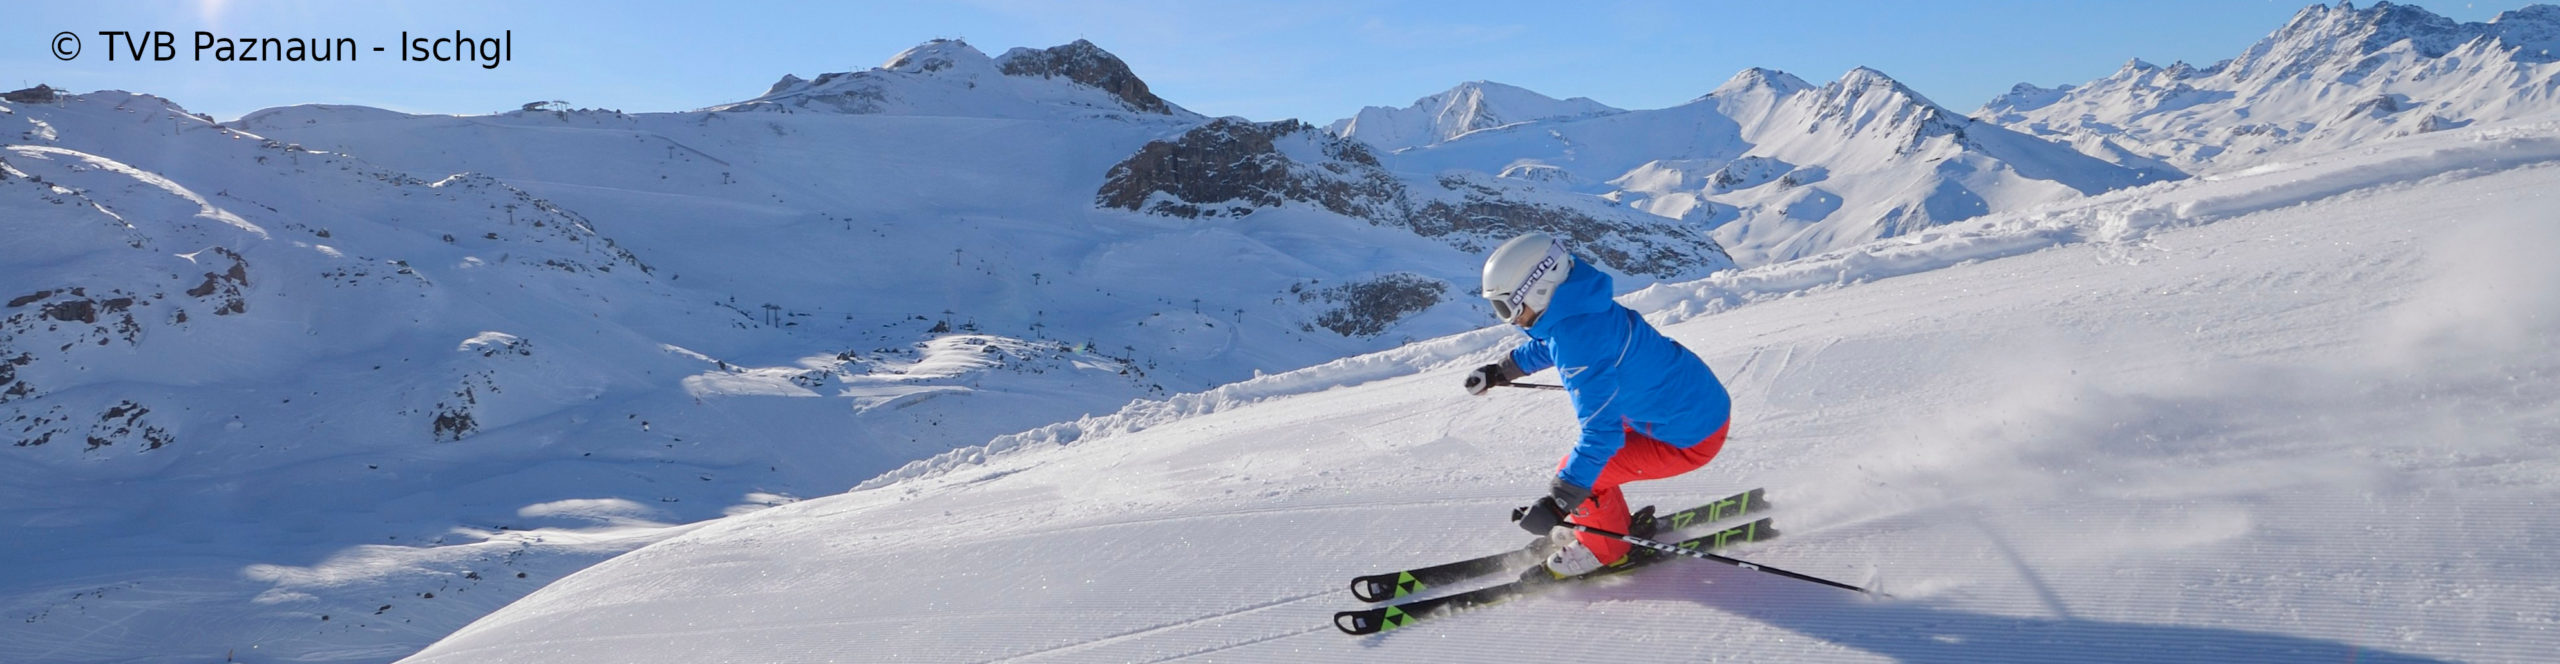 ISCHGL Opening – Skiwochenende zum Sparpreis- 3 Sterne Hotel – ab Freitag früh – 3 Skitage 